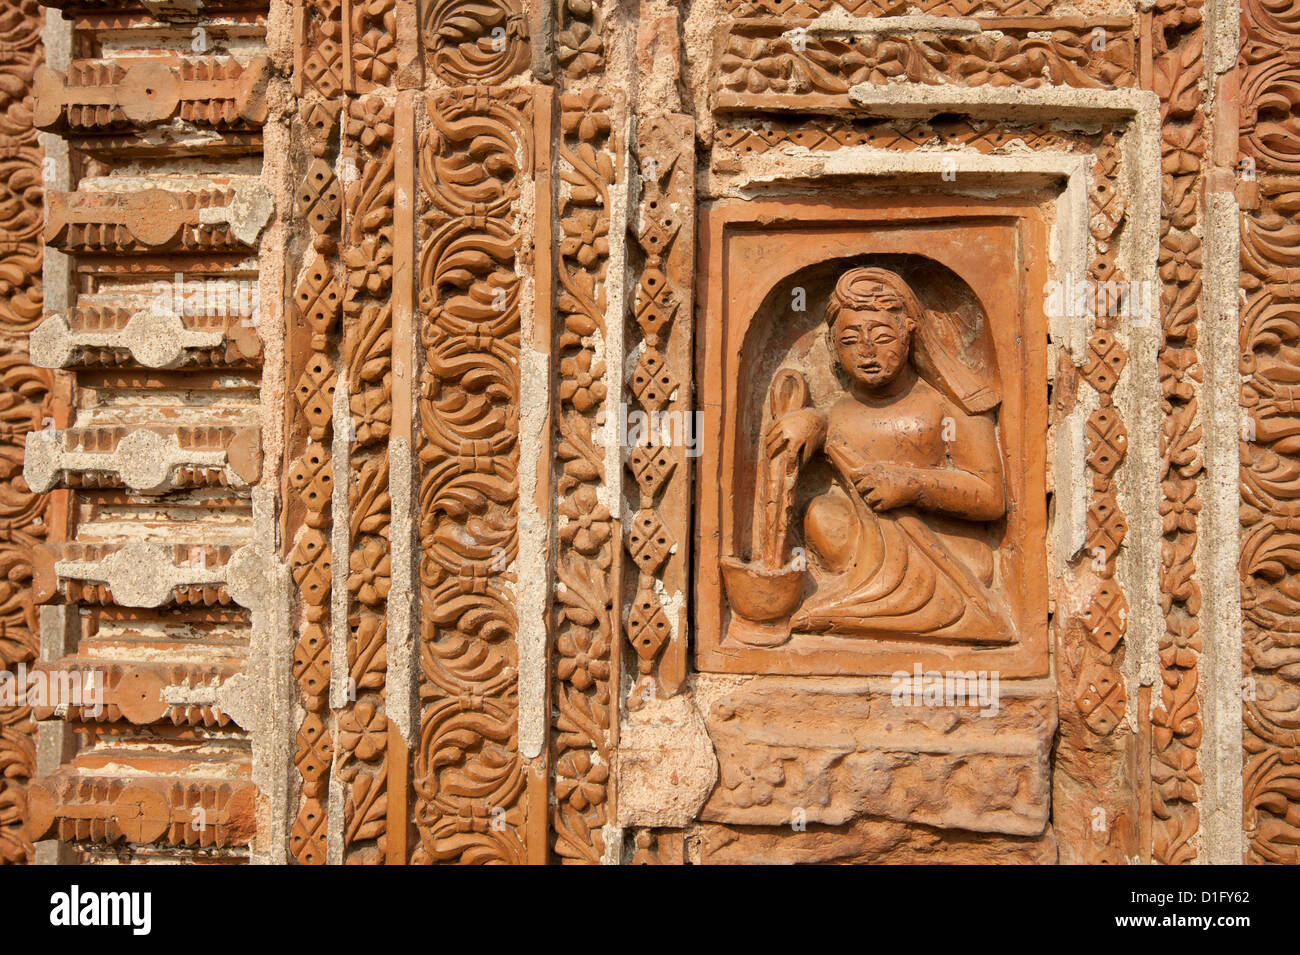 Détail de façade sculptée de l'Prataspeswar temple en terre cuite, construit en 1849, l'ensemble du temple de Kalna, West Bengal, India Banque D'Images